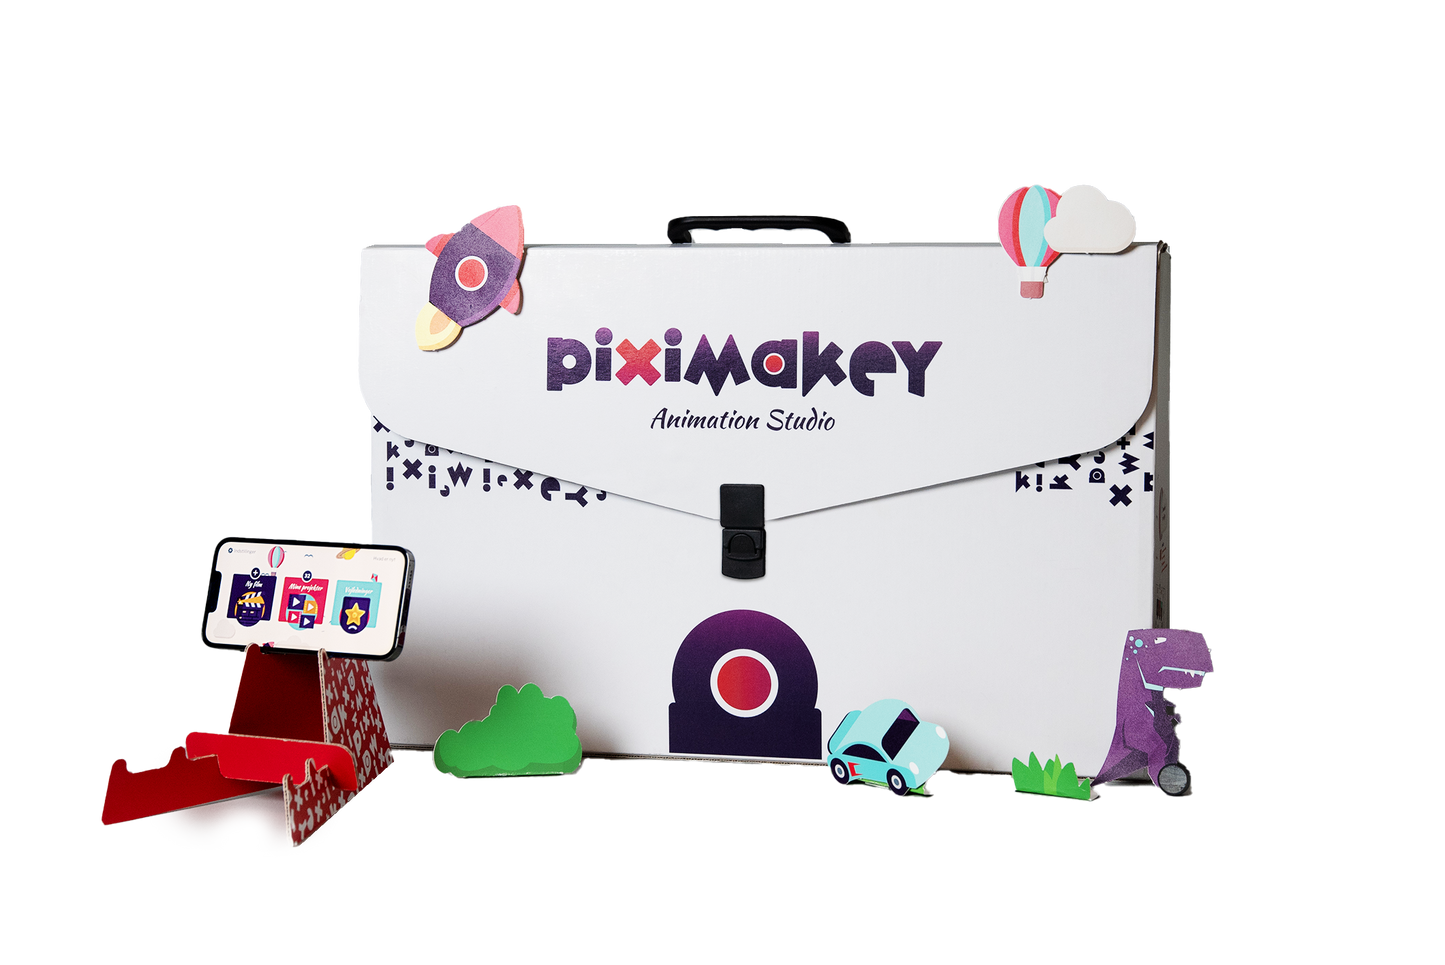 Piximakey Animation Studio